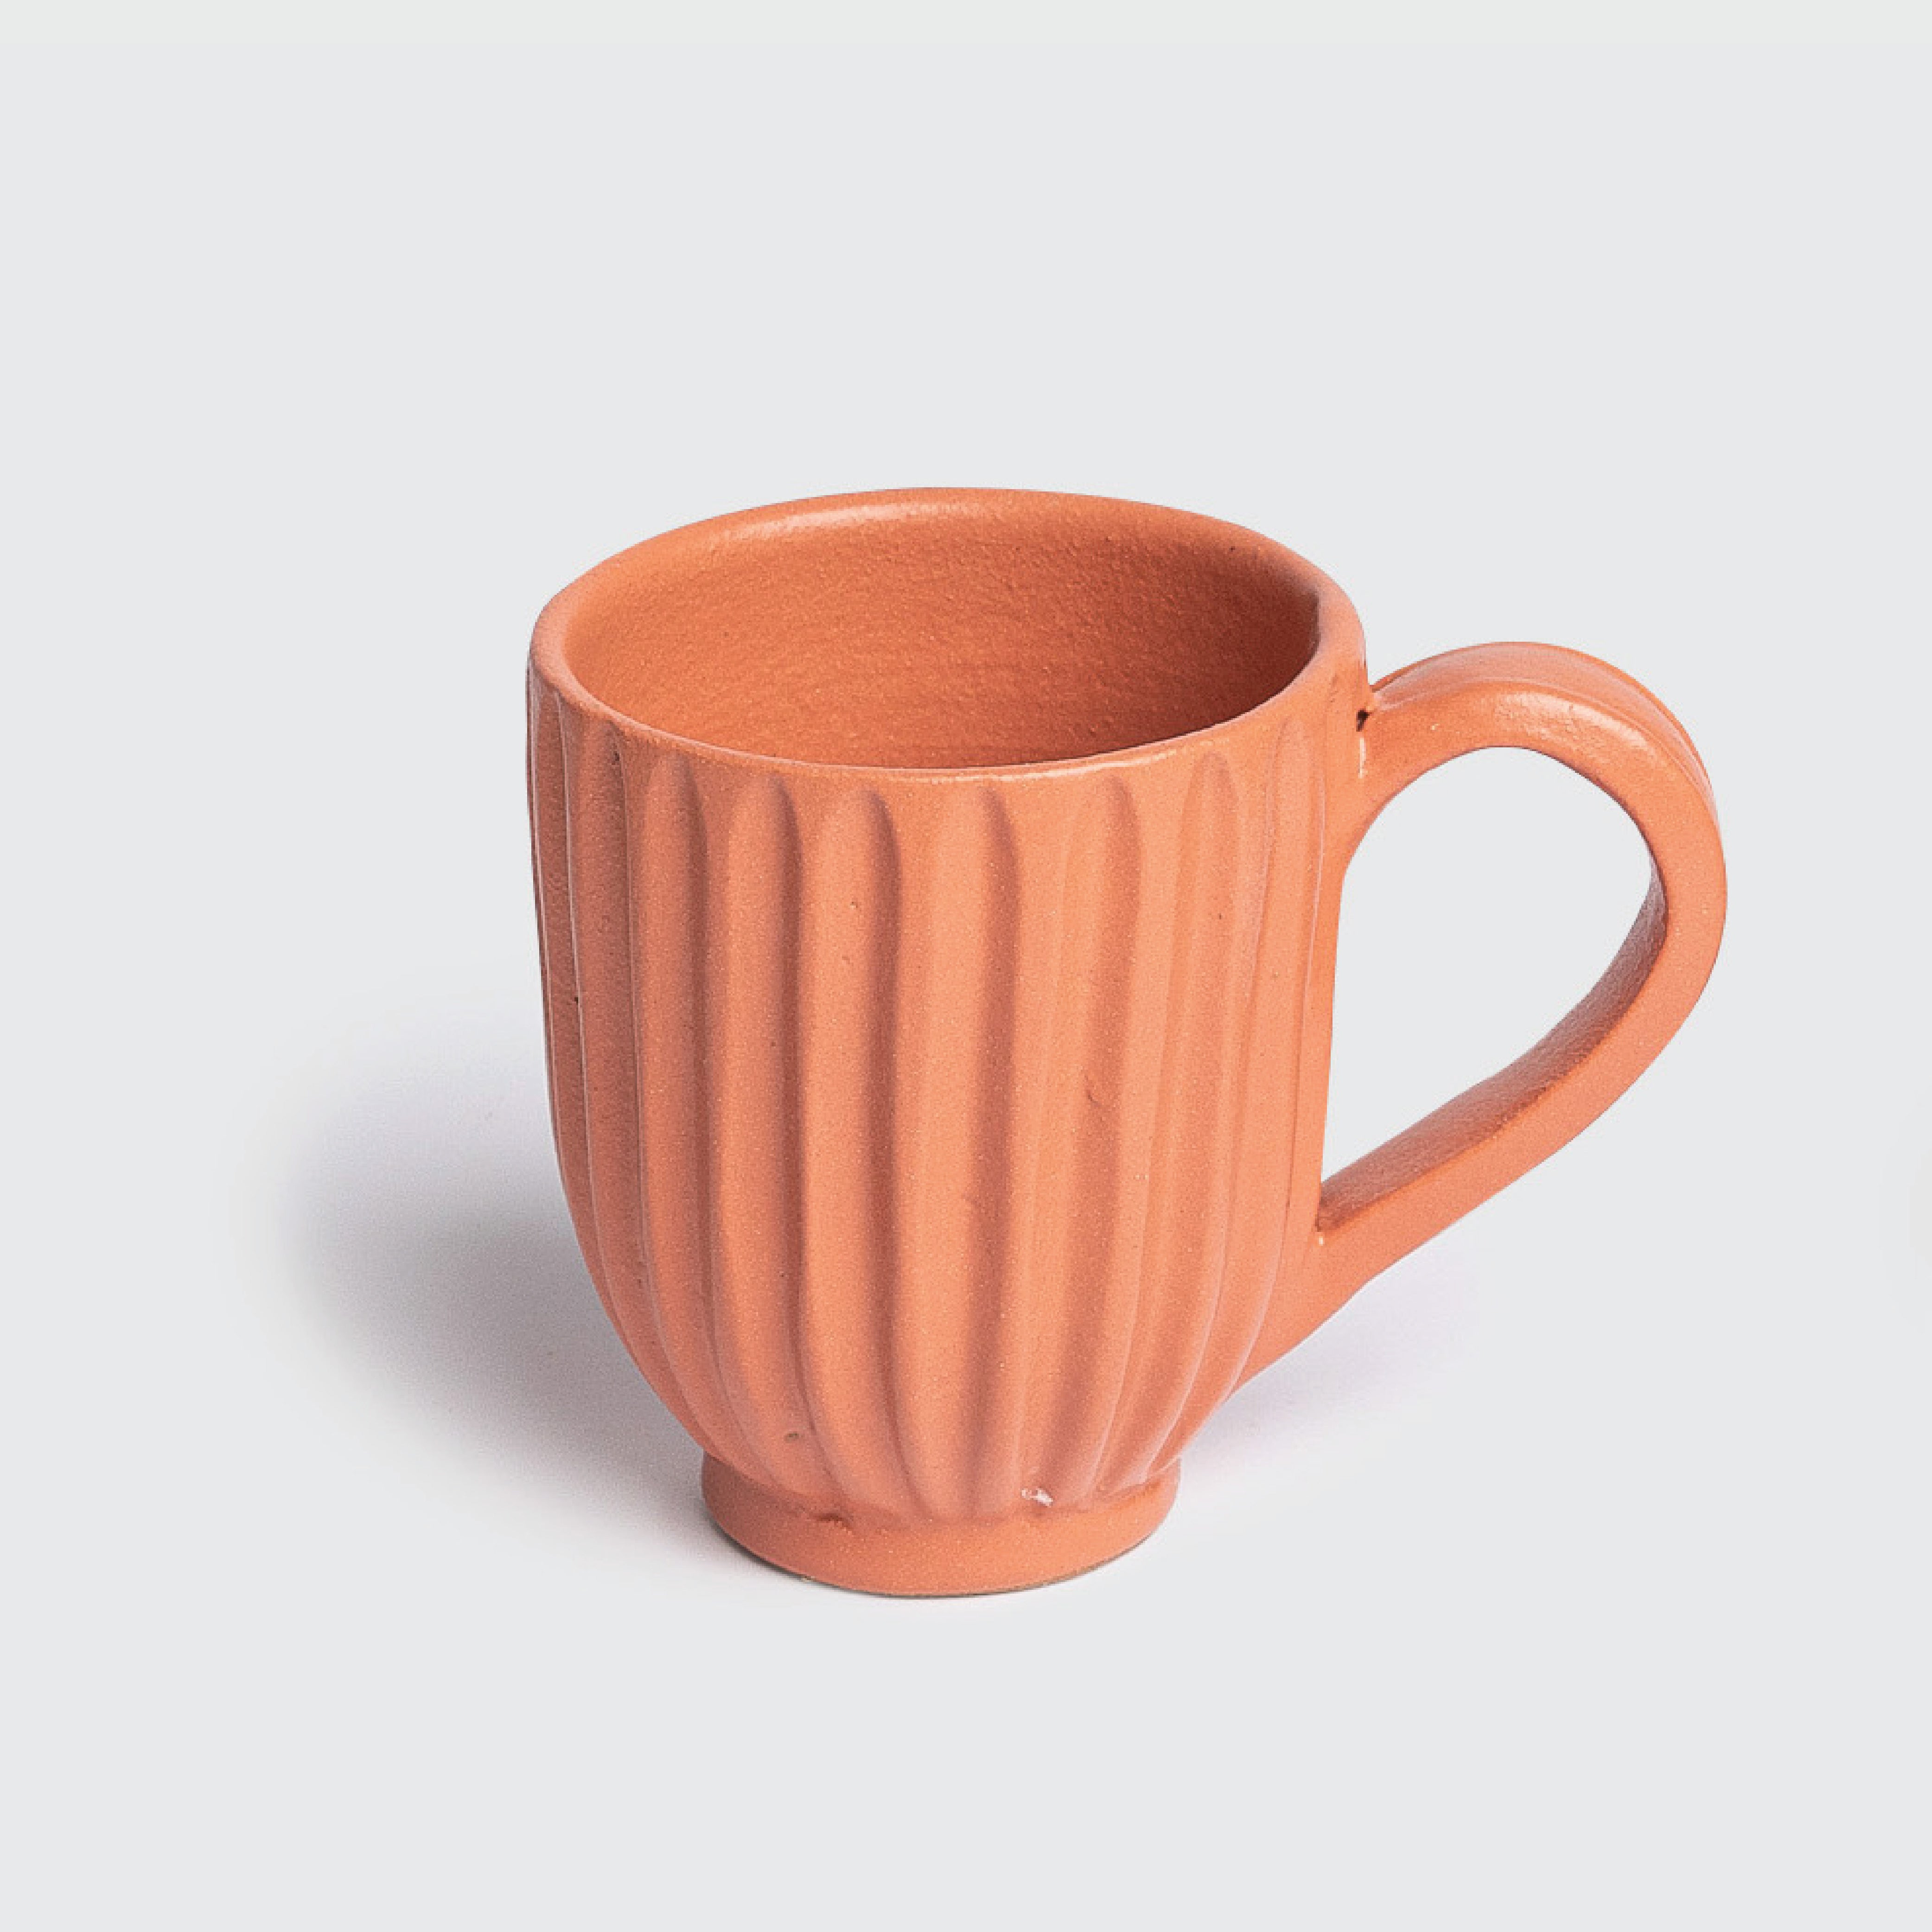 Sunrise Pottery Mug